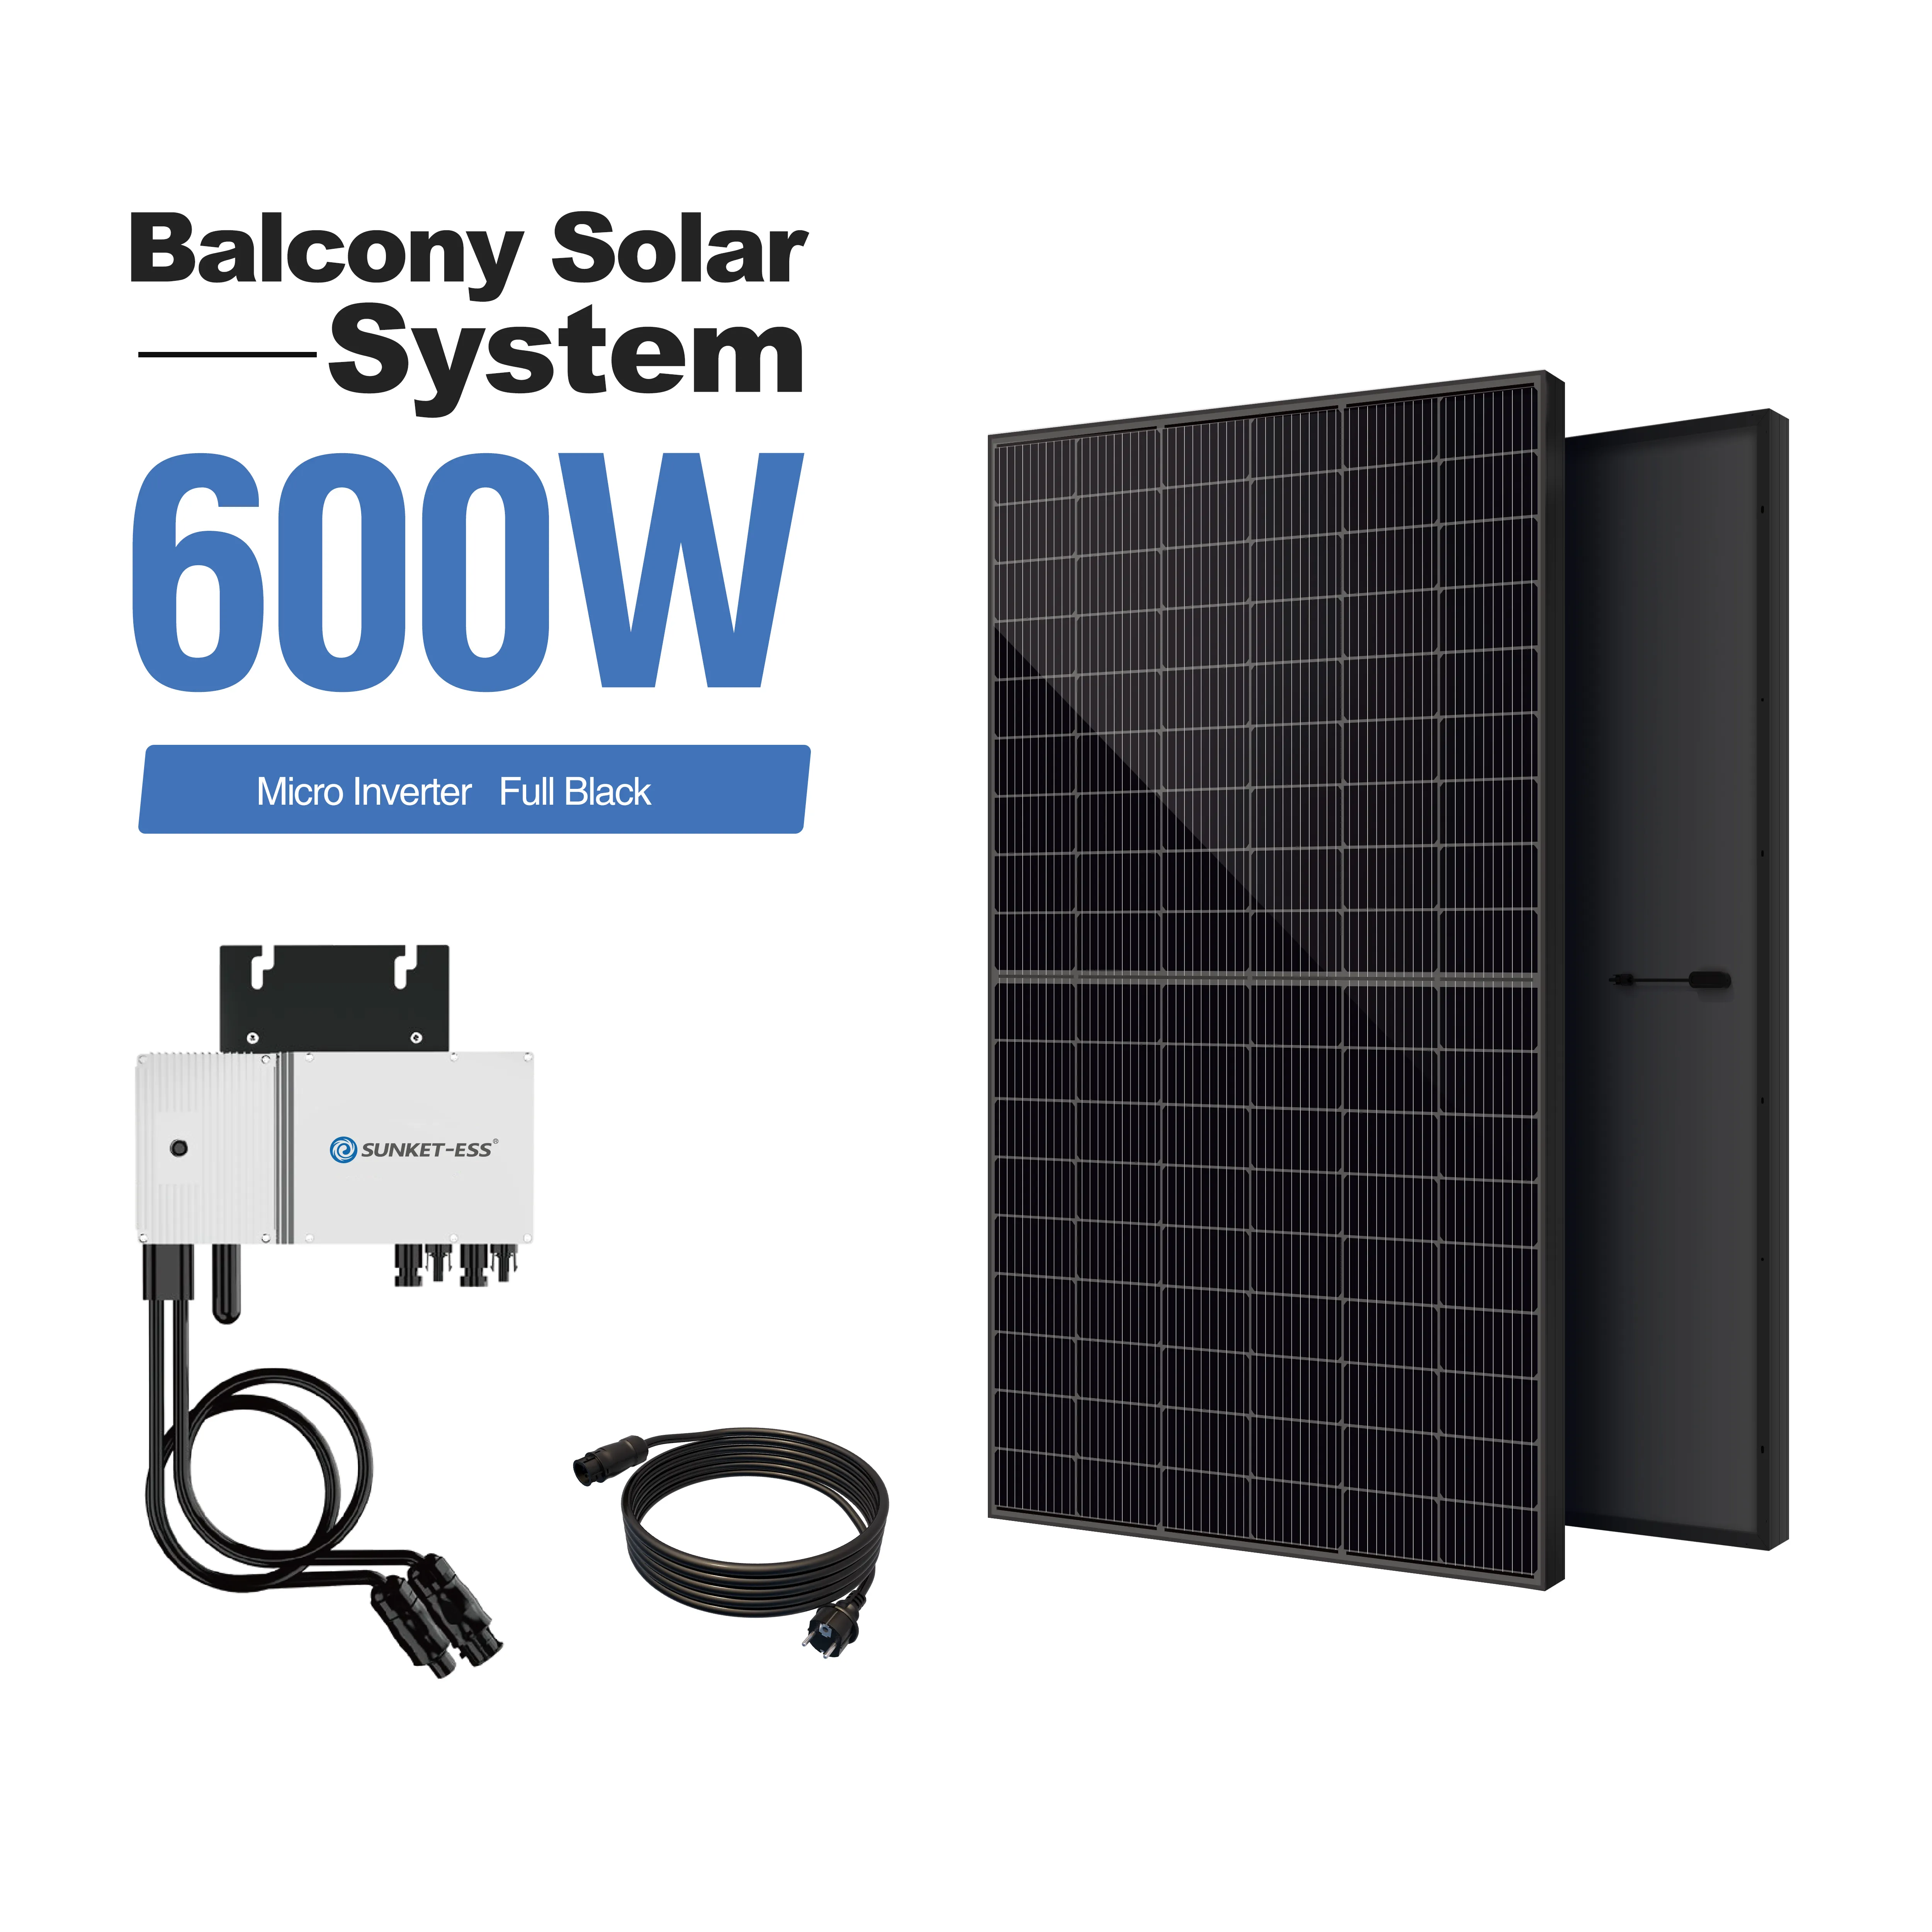 발코니 balkonkraftwerk 에너지 재생 가능 제품 전체 시스템 키트 600W 800W 태양열 halterung 발코니 사용 플러그 플레이